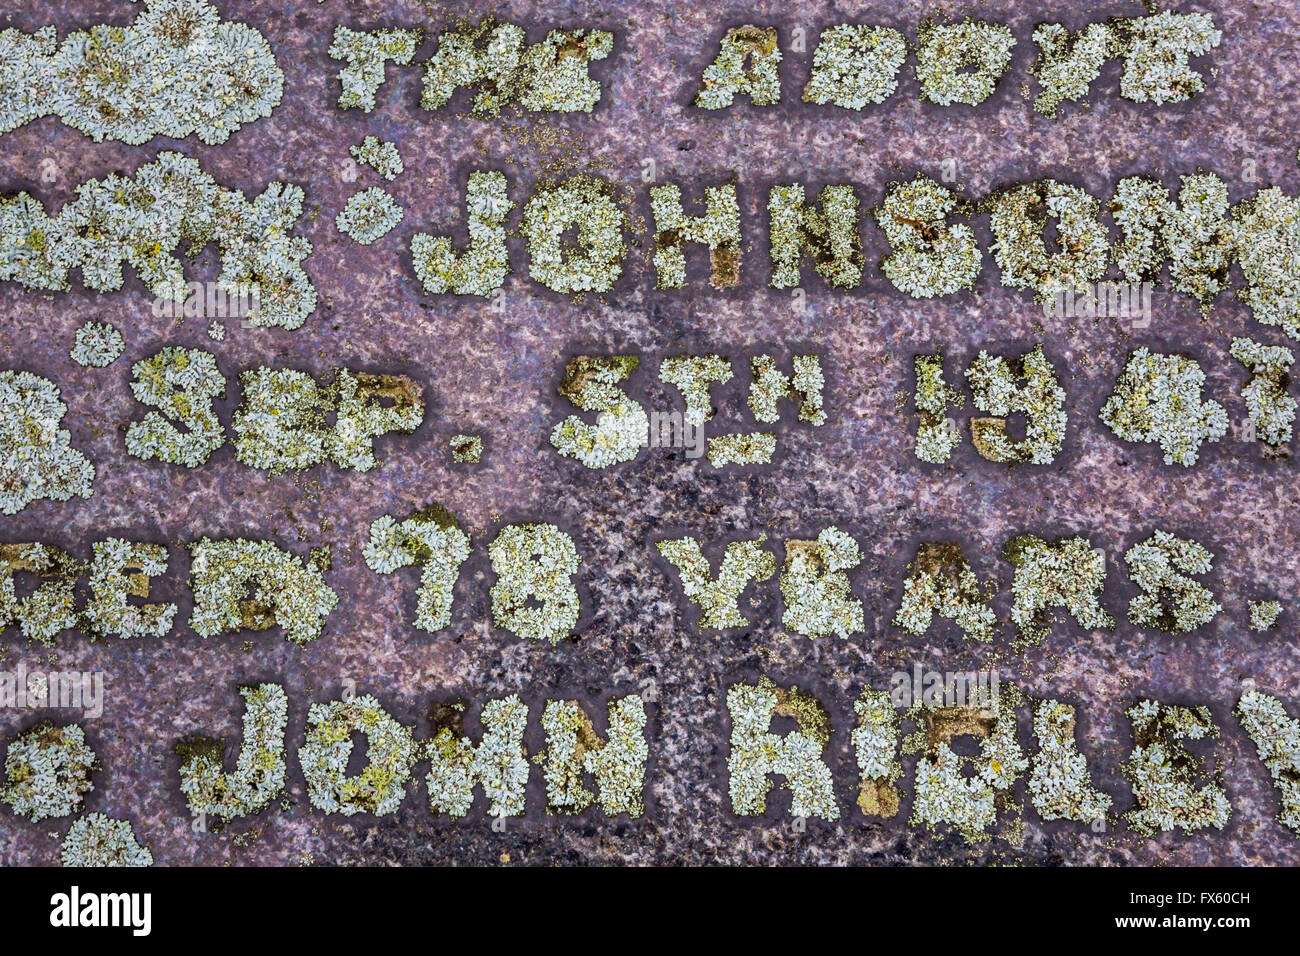 La croissance des lichens à sélectionner les lettres sur une vieille pierre tombale, cimetière Heavenfield, Lechlade, Northumberland, Angleterre Banque D'Images